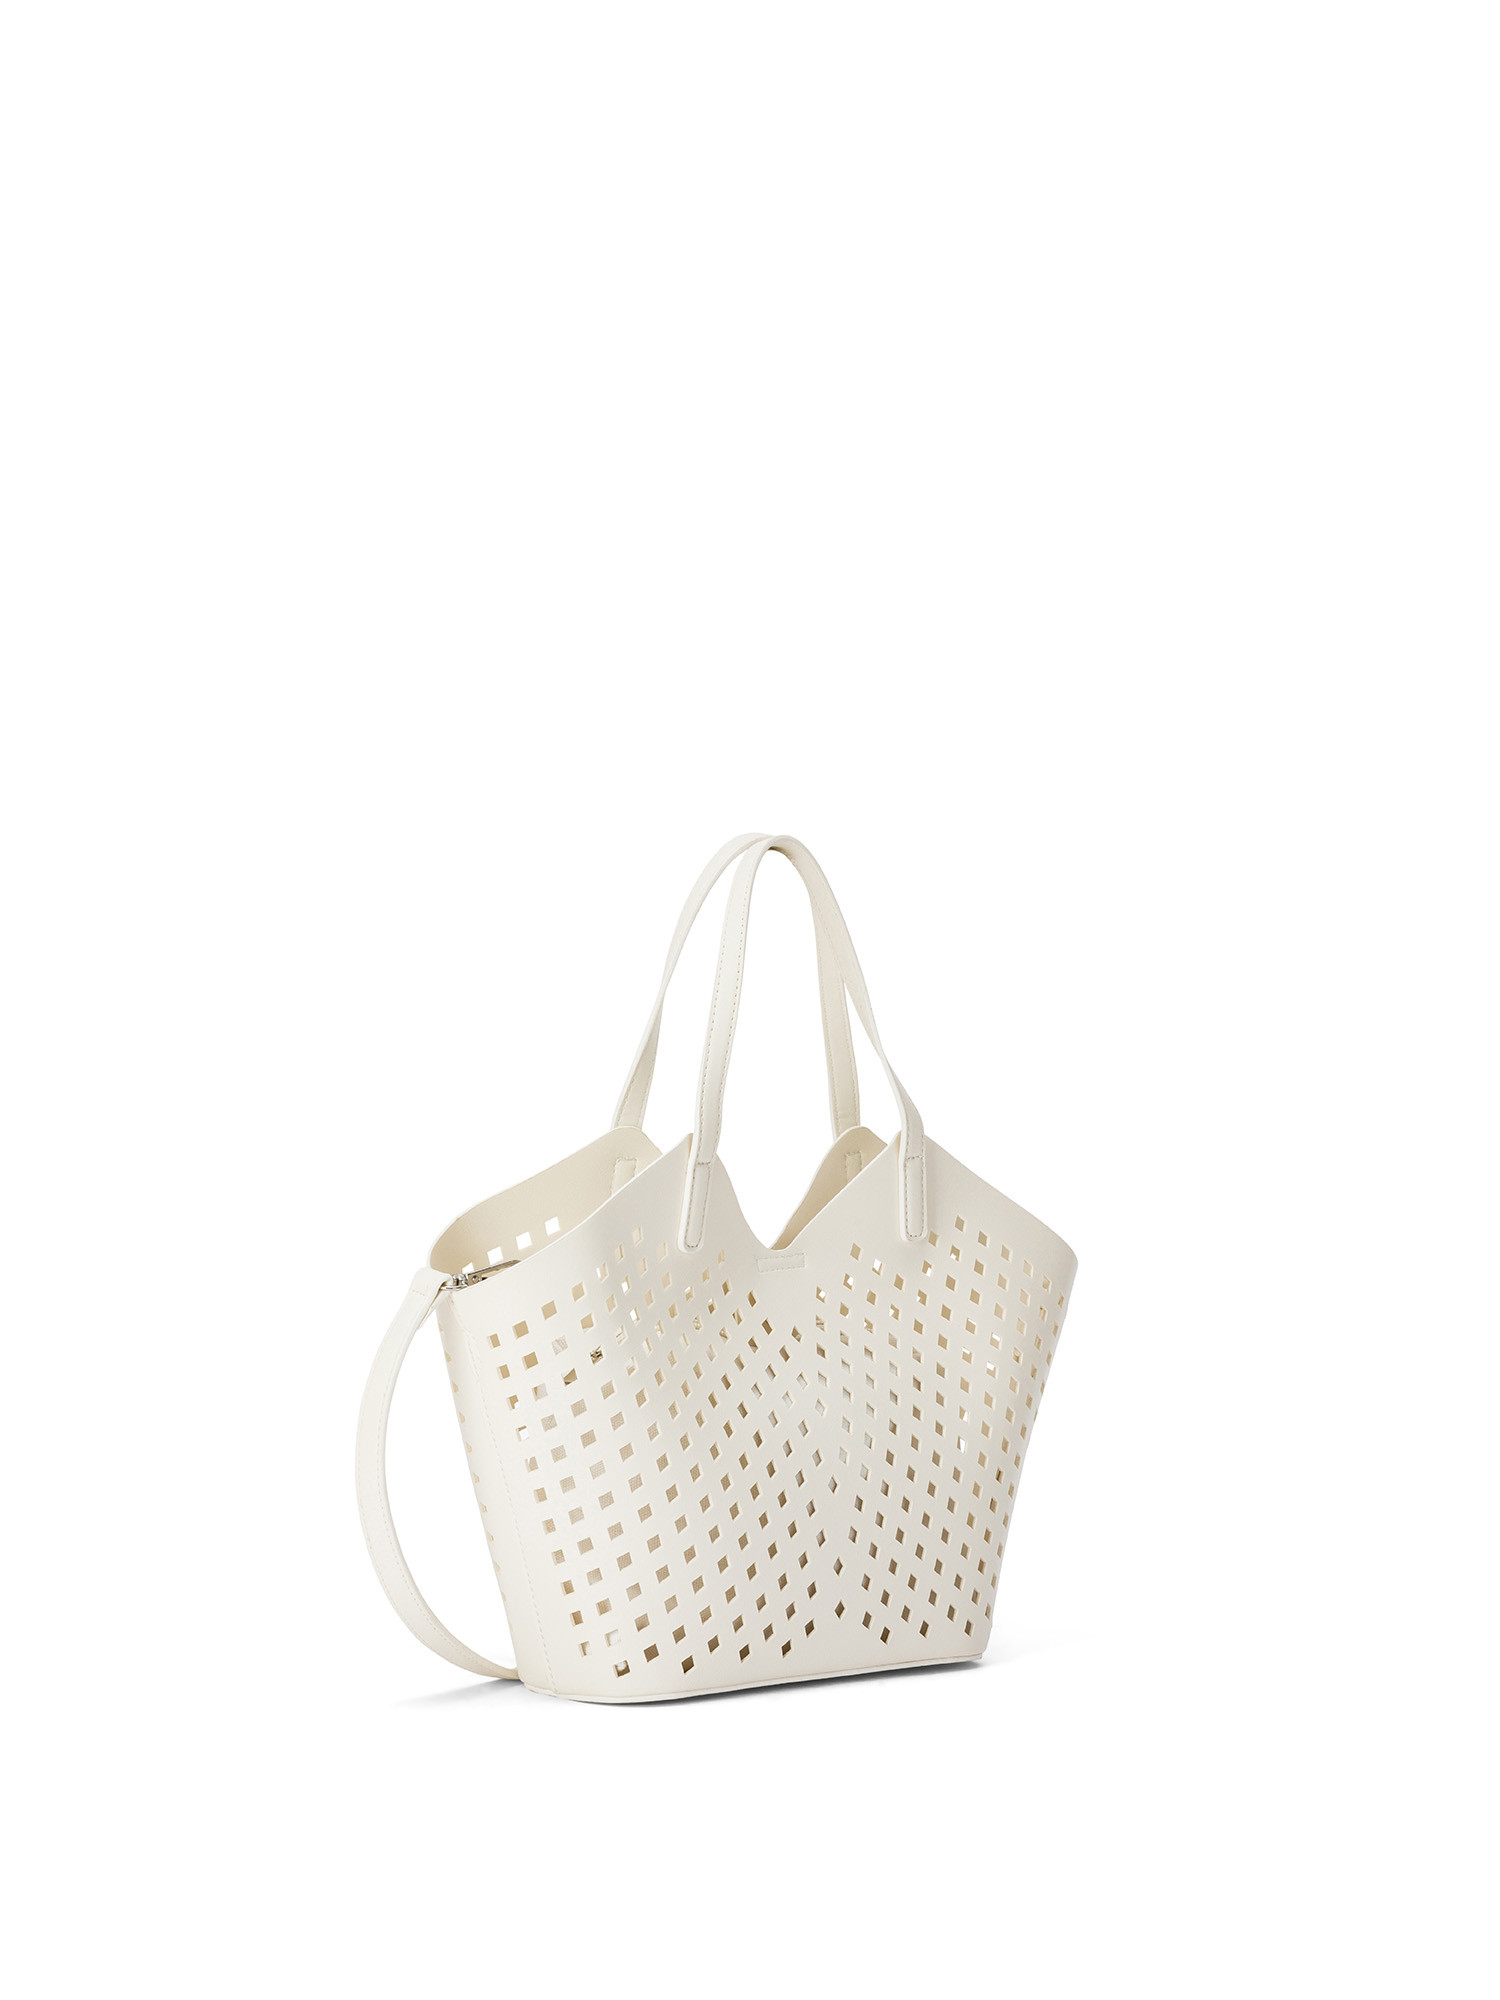 Koan - Shopping bag traforata, Bianco, large image number 1